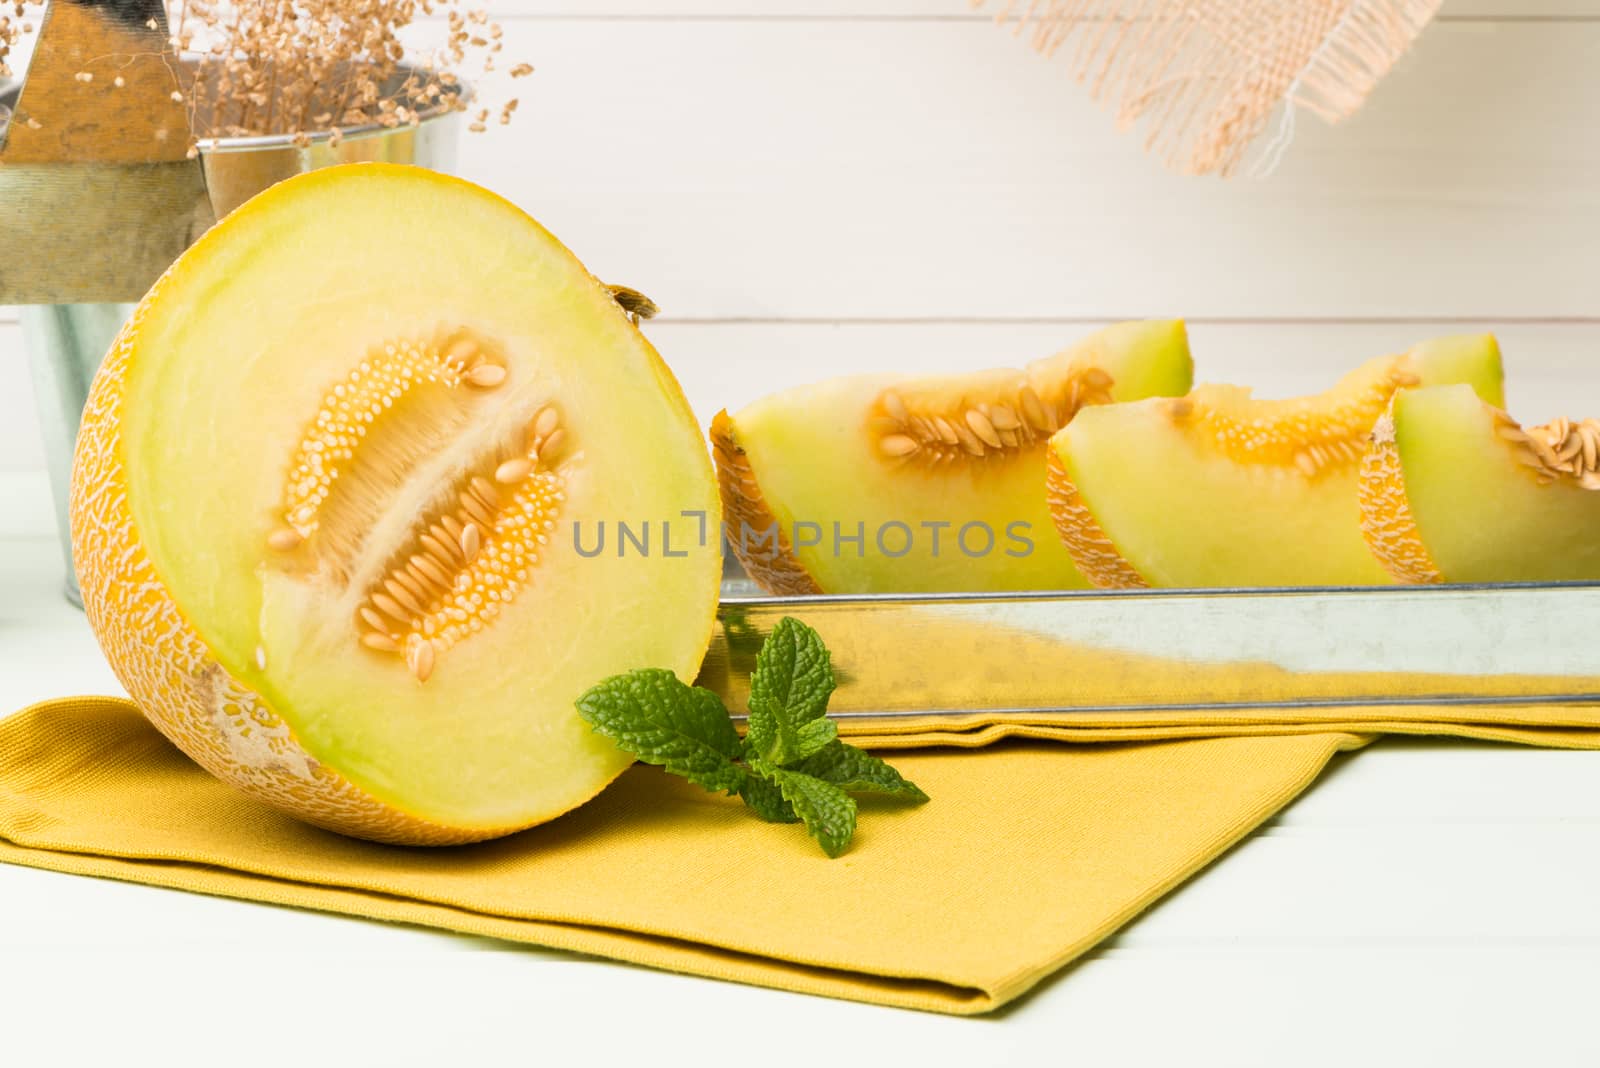 Honeydew melon by homydesign